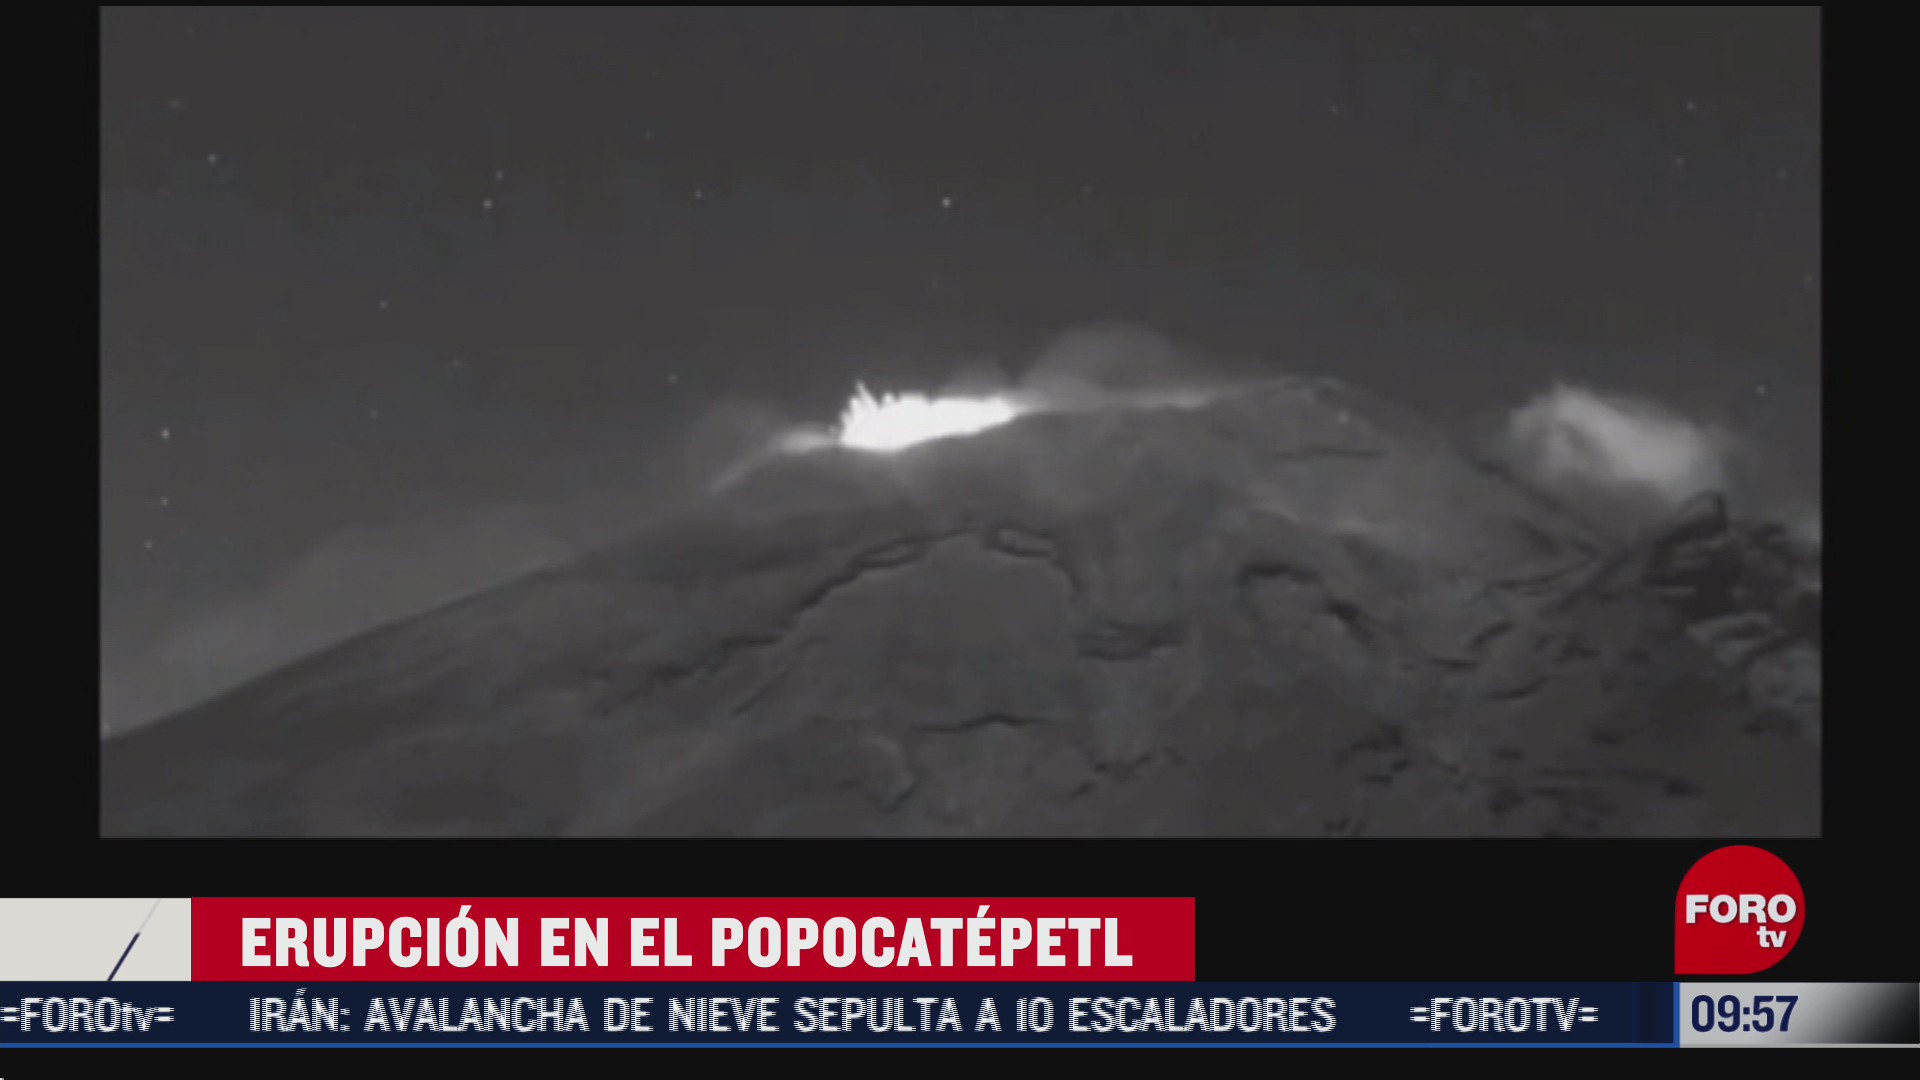 volcan popocatepetl presenta erupcion de material incandescente